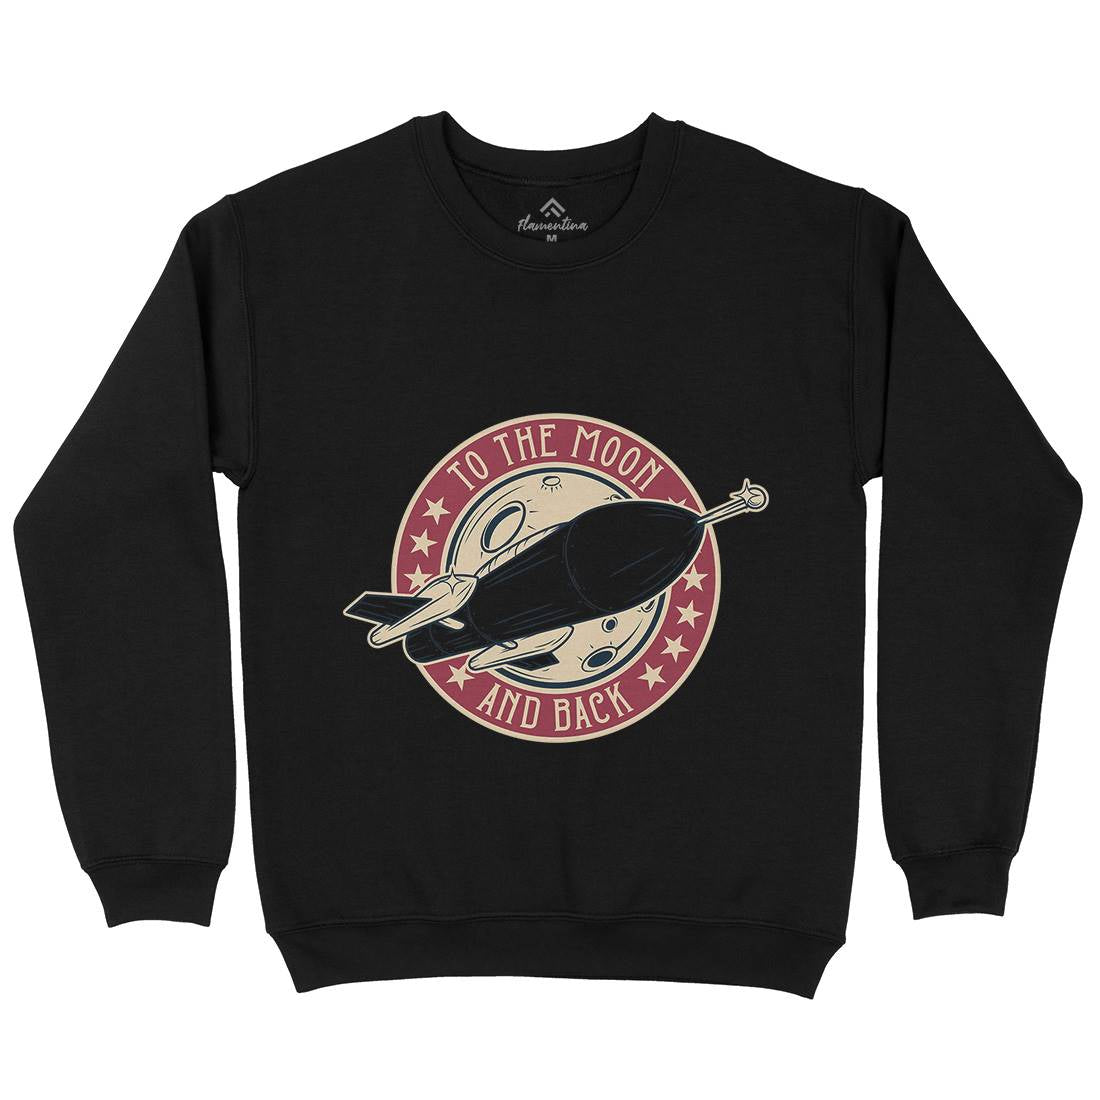 To The Moon Kids Crew Neck Sweatshirt Space D993